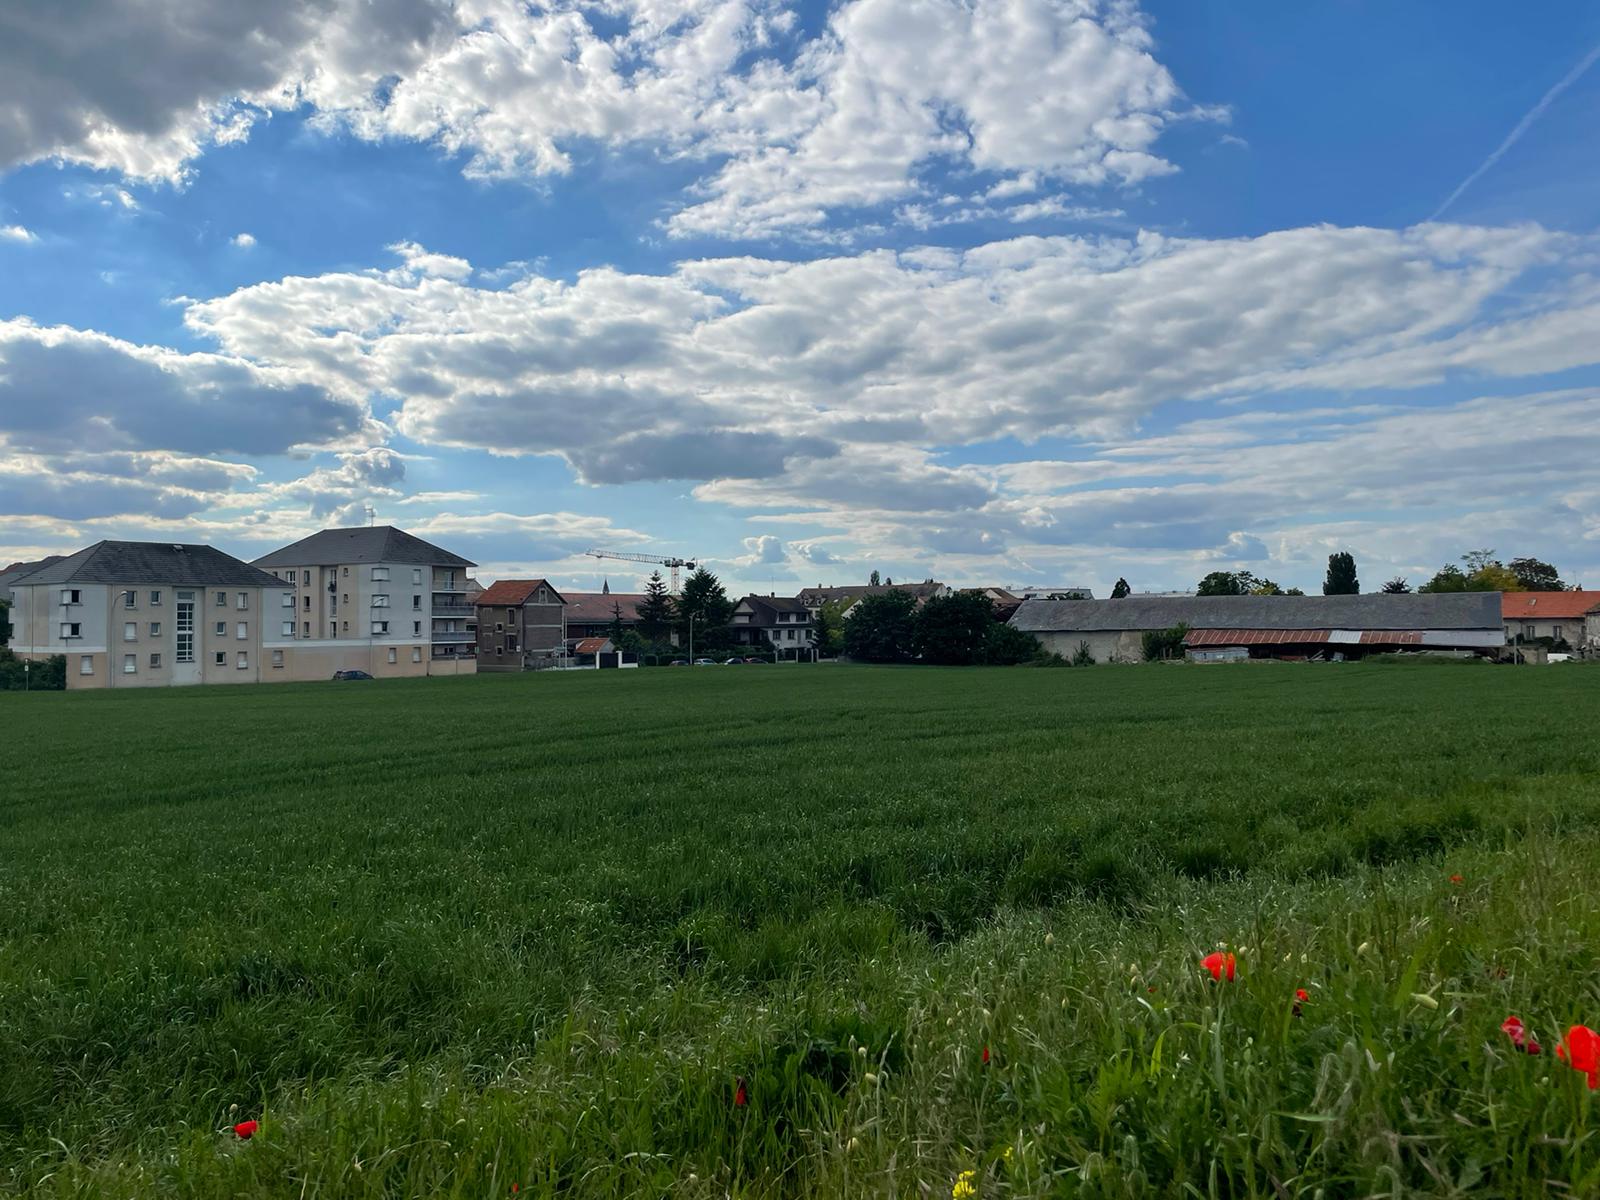 Villeparisis (Seine-et-Marne), jeudi. L'emplacement envisagé pour construire le futur lycée est la ferme Legrand et le vaste terrain situé derrière celle-ci. LP/Timothée Talbi